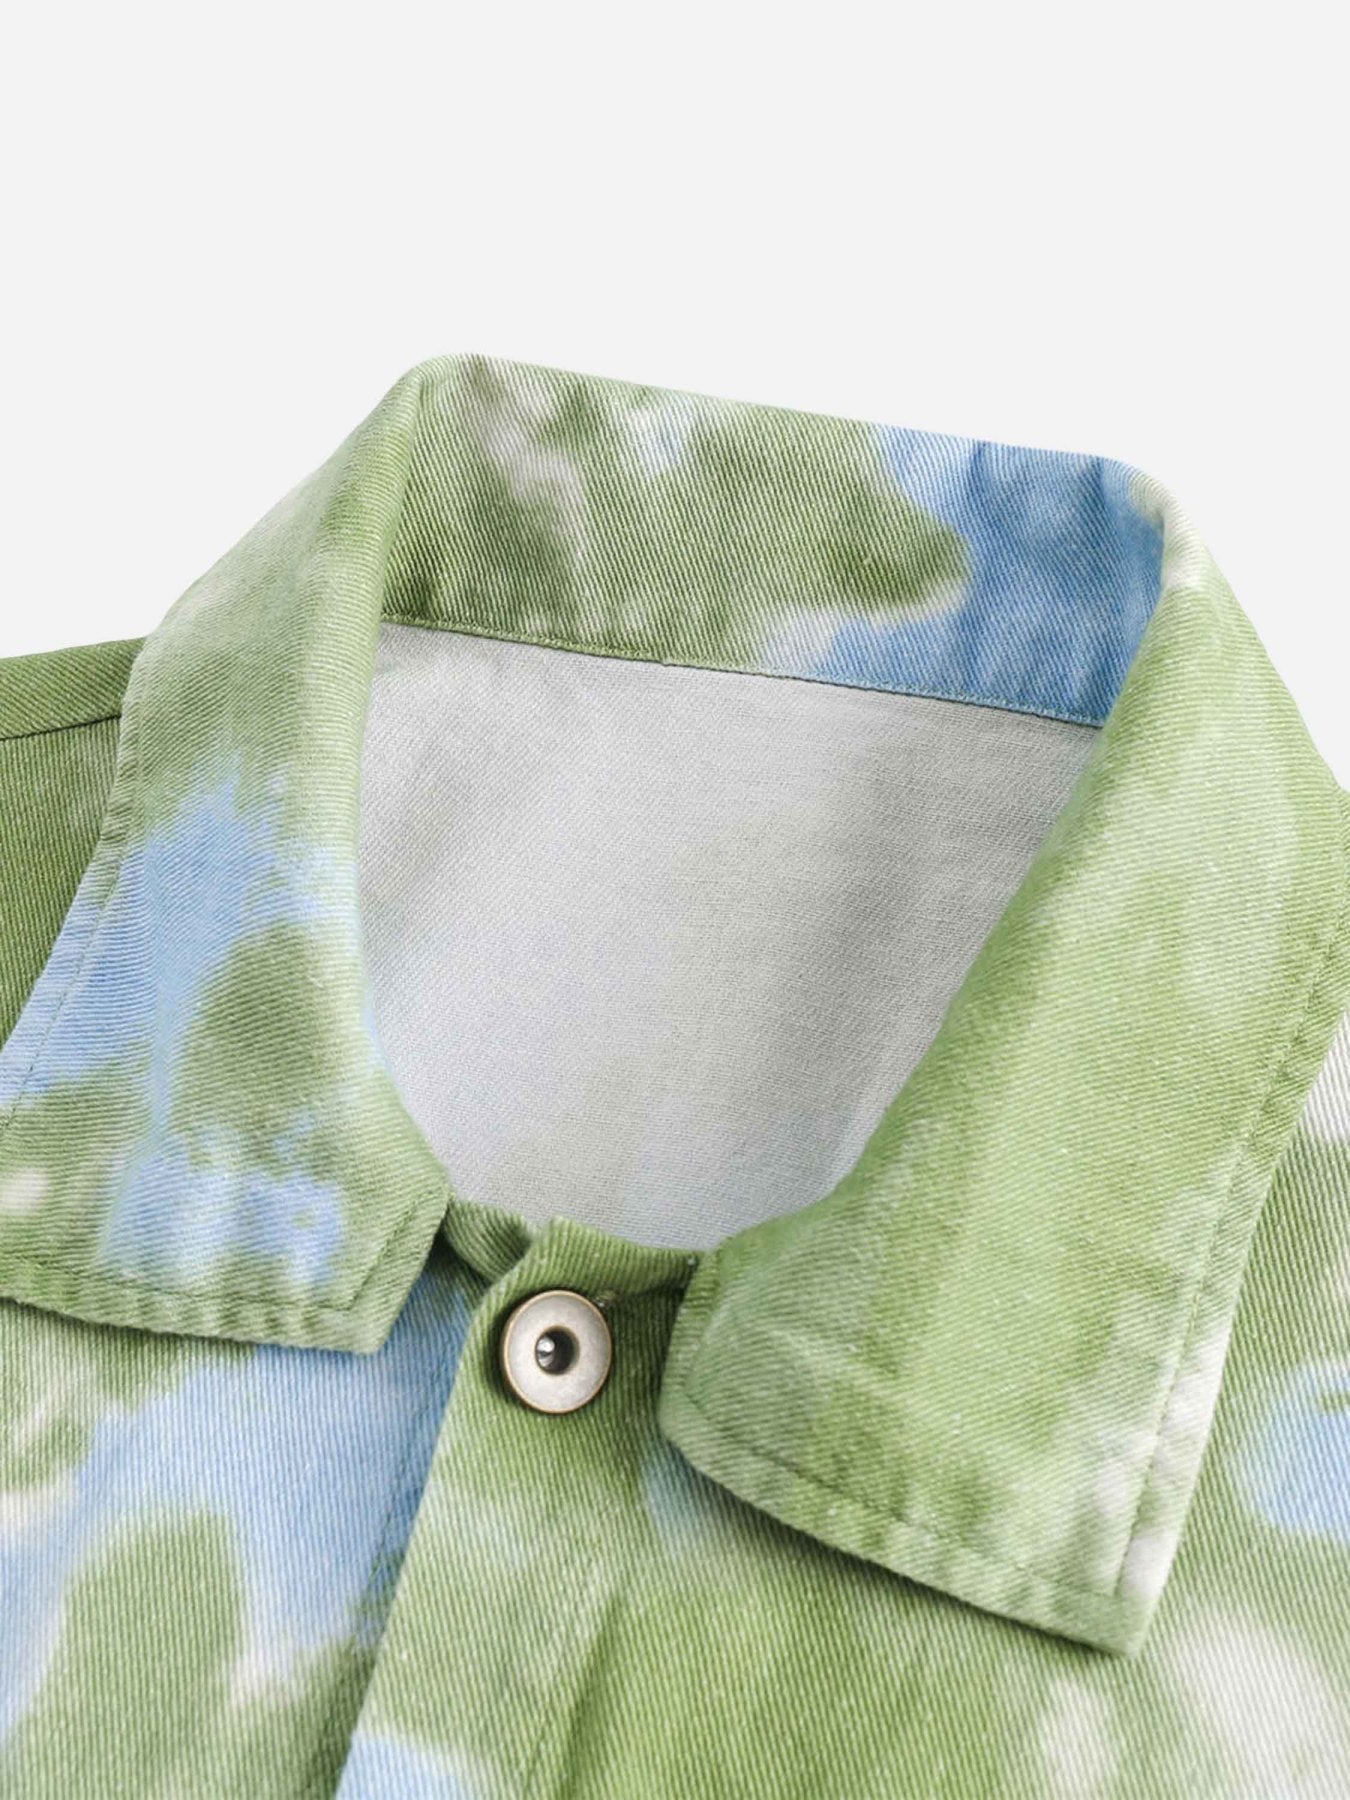 The Supermade Vintage Tie-dye Denim Jacket